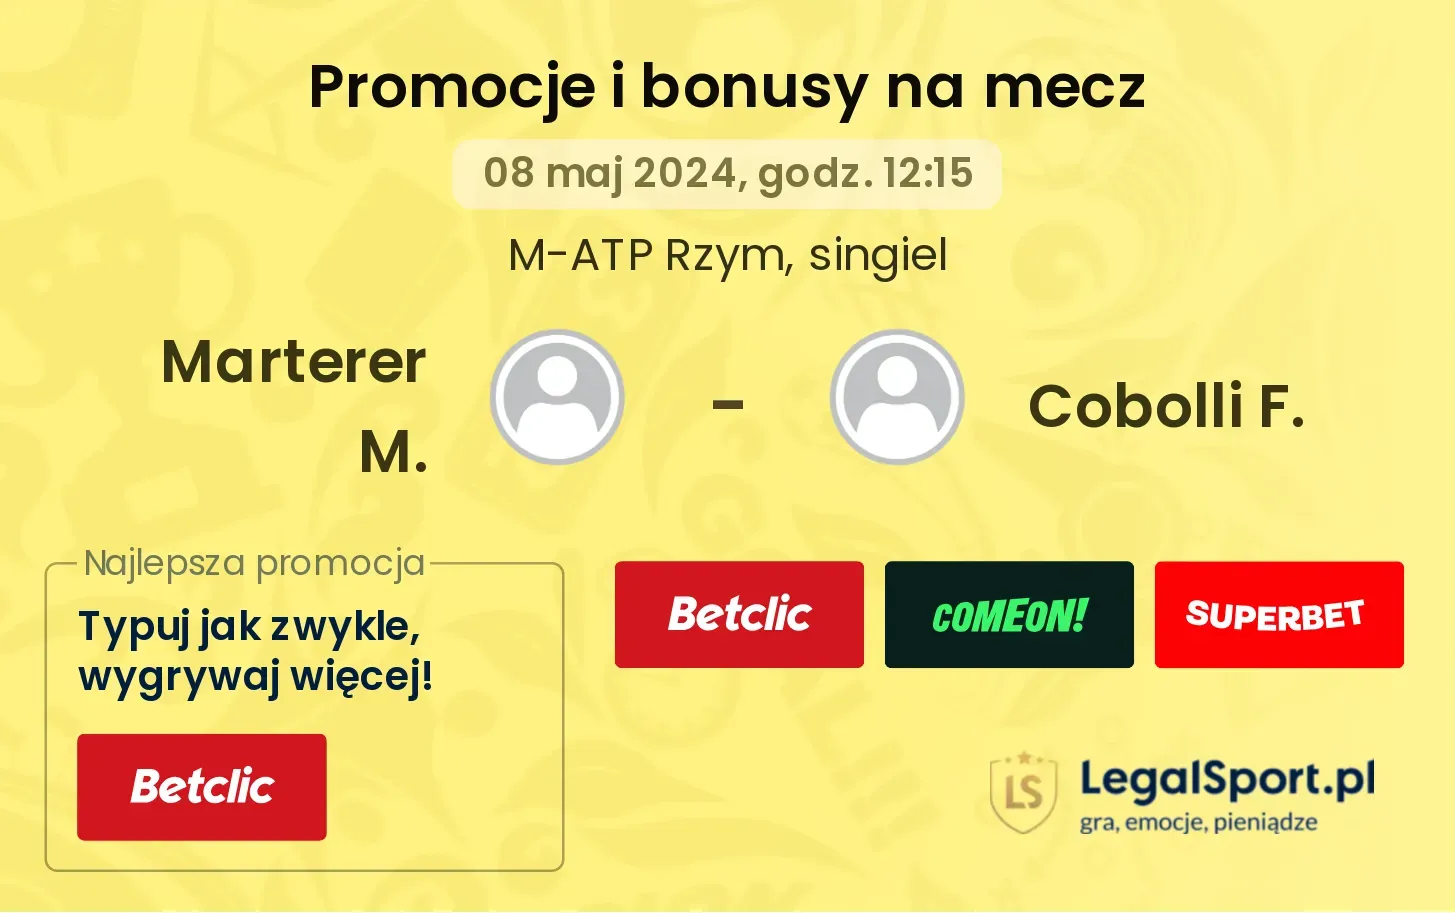 Marterer M. - Cobolli F. promocje bonusy na mecz